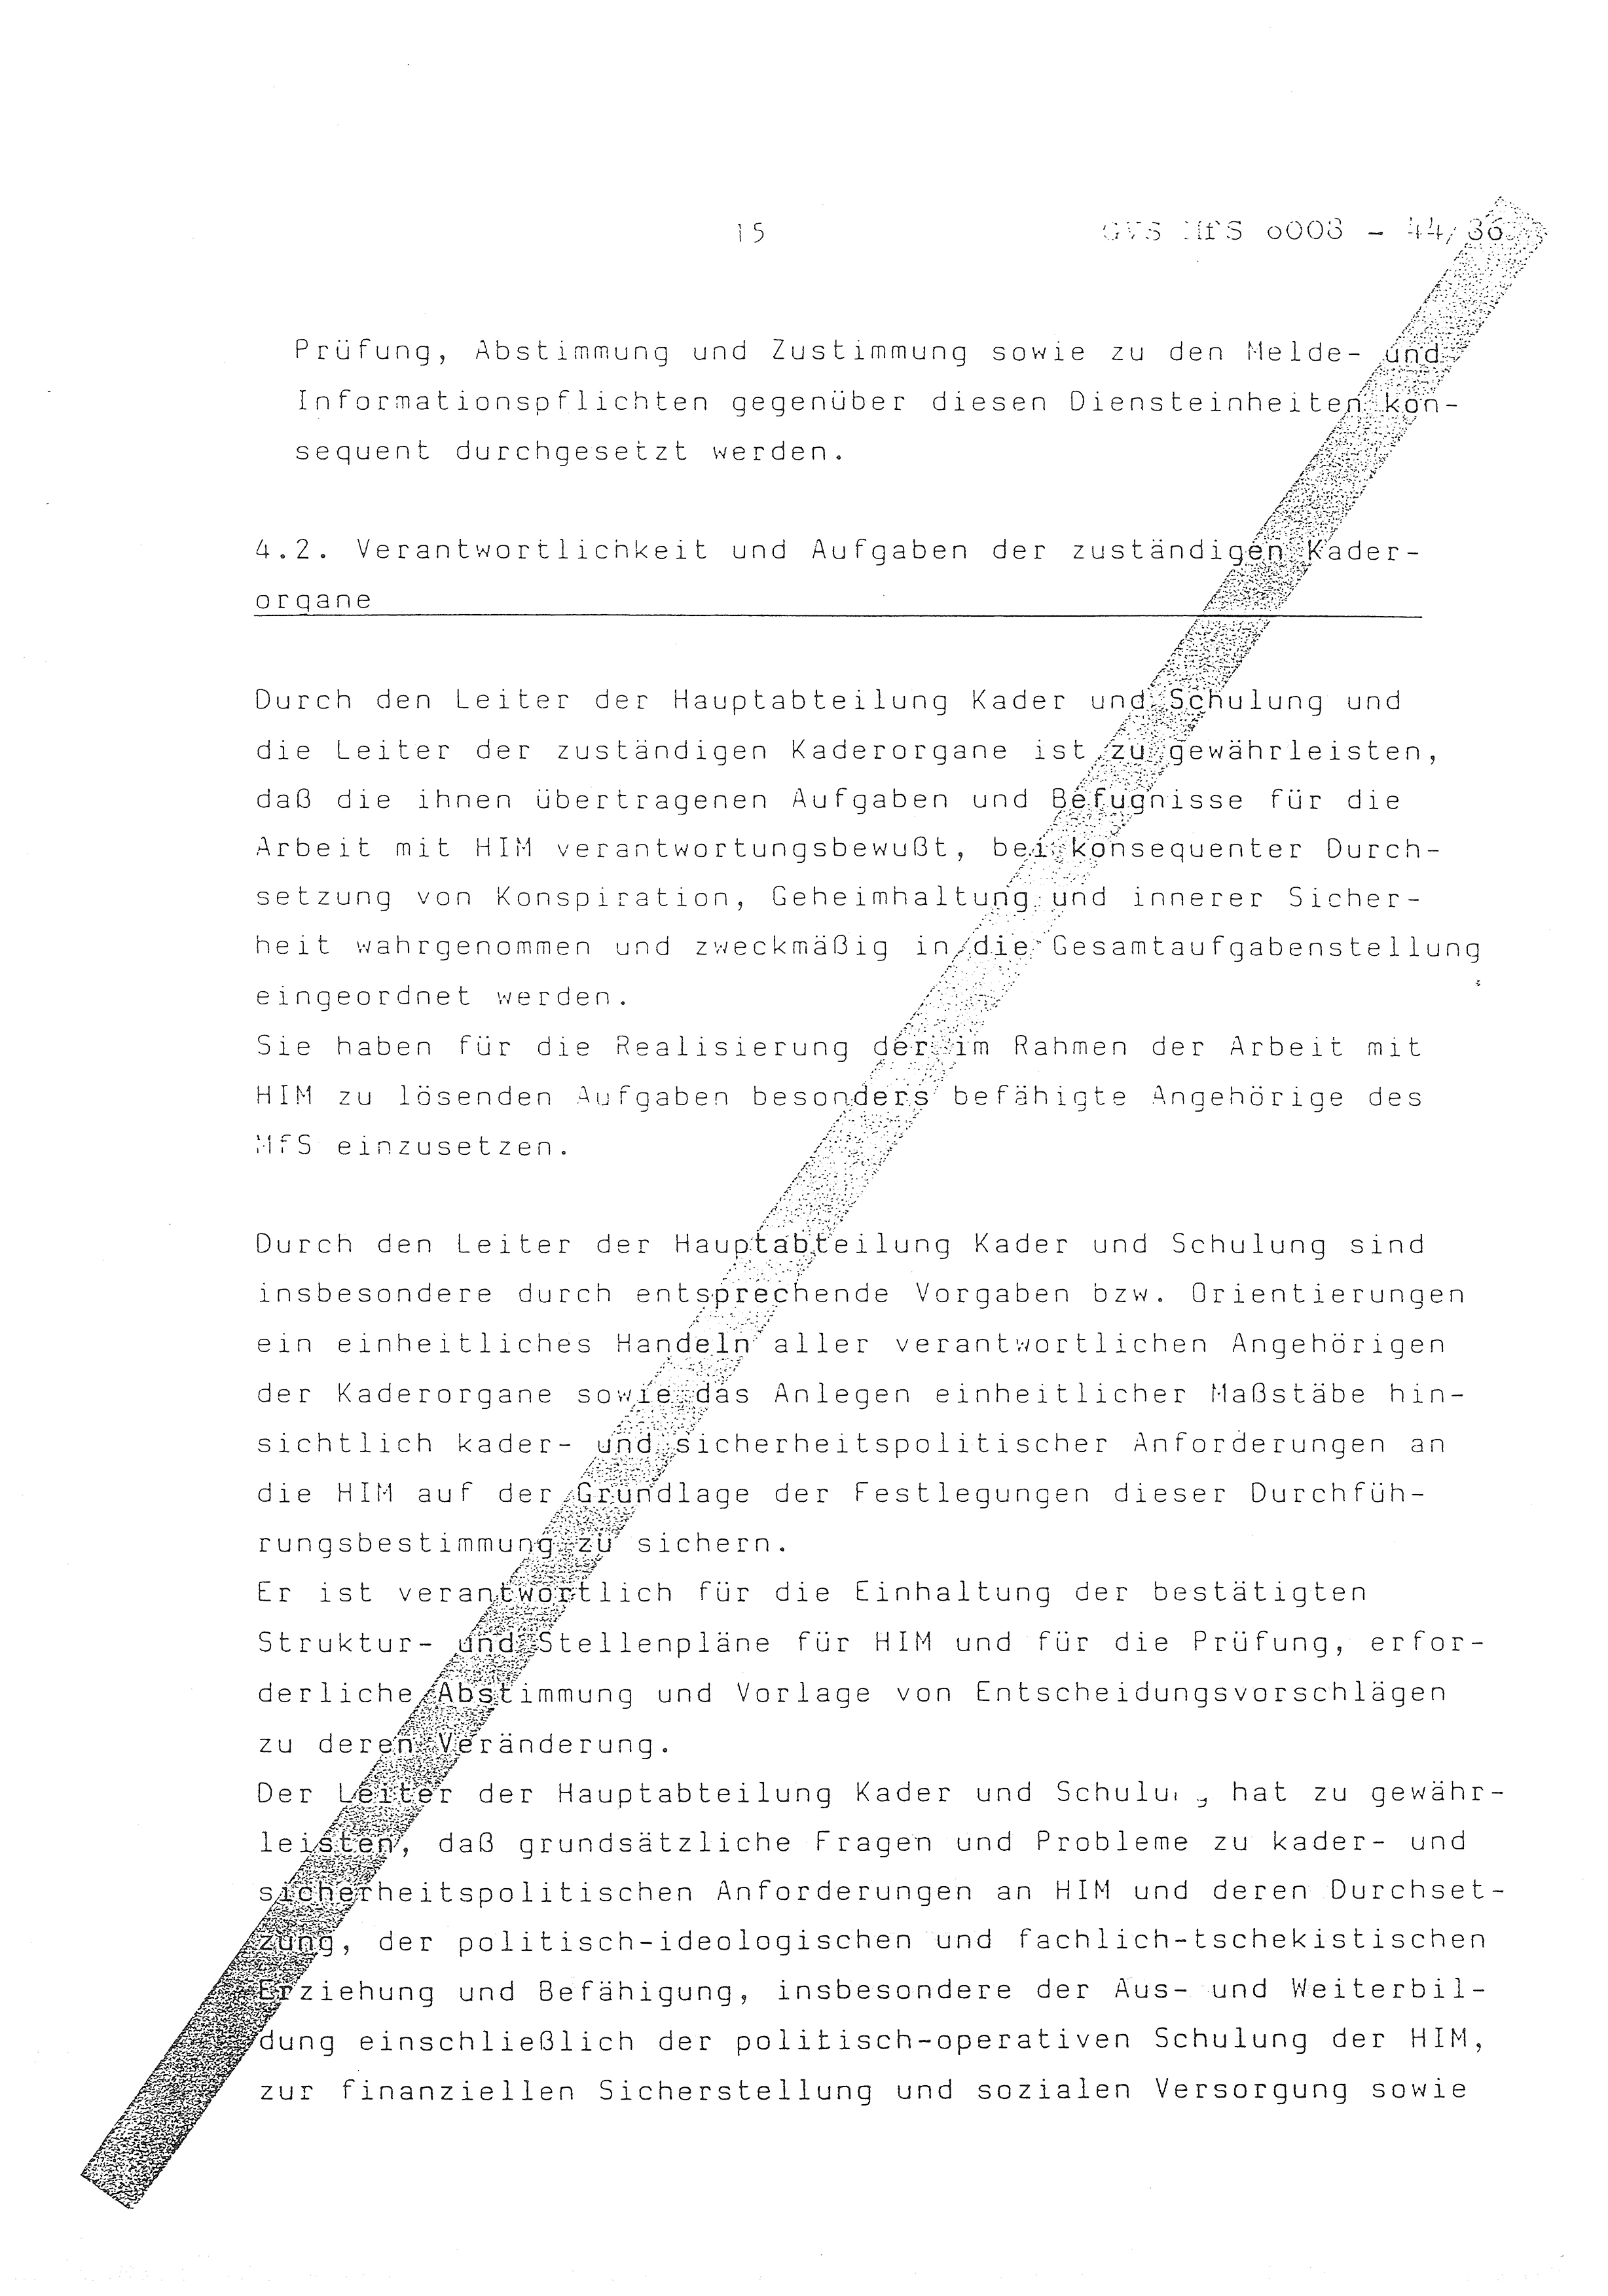 2. Durchführungsbestimmung zur Richtlinie 1/79 über die Arbeit mit hauptamtlichen Mitarbeitern des MfS (HIM), Deutsche Demokratische Republik (DDR), Ministerium für Staatssicherheit (MfS), Der Minister (Mielke), Geheime Verschlußsache (GVS) ooo8-44/86, Berlin 1986, Seite 15 (2. DB RL 1/79 DDR MfS Min. GVS ooo8-44/86 1986, S. 15)